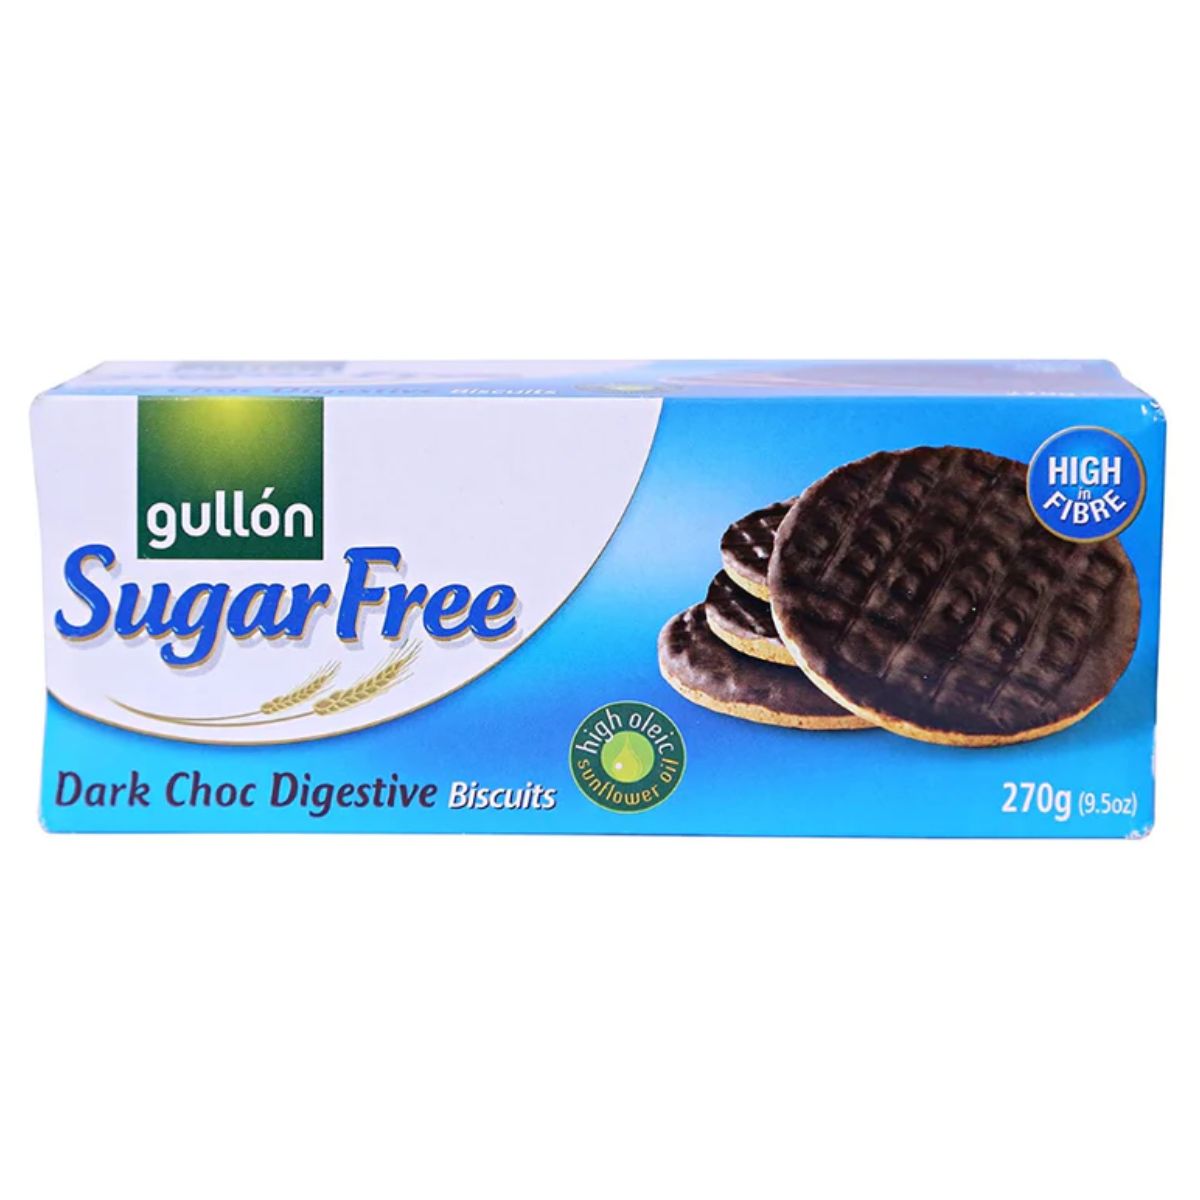 A box of Gullon - Sugar Free Choco Digestive Biscuits - 270g.